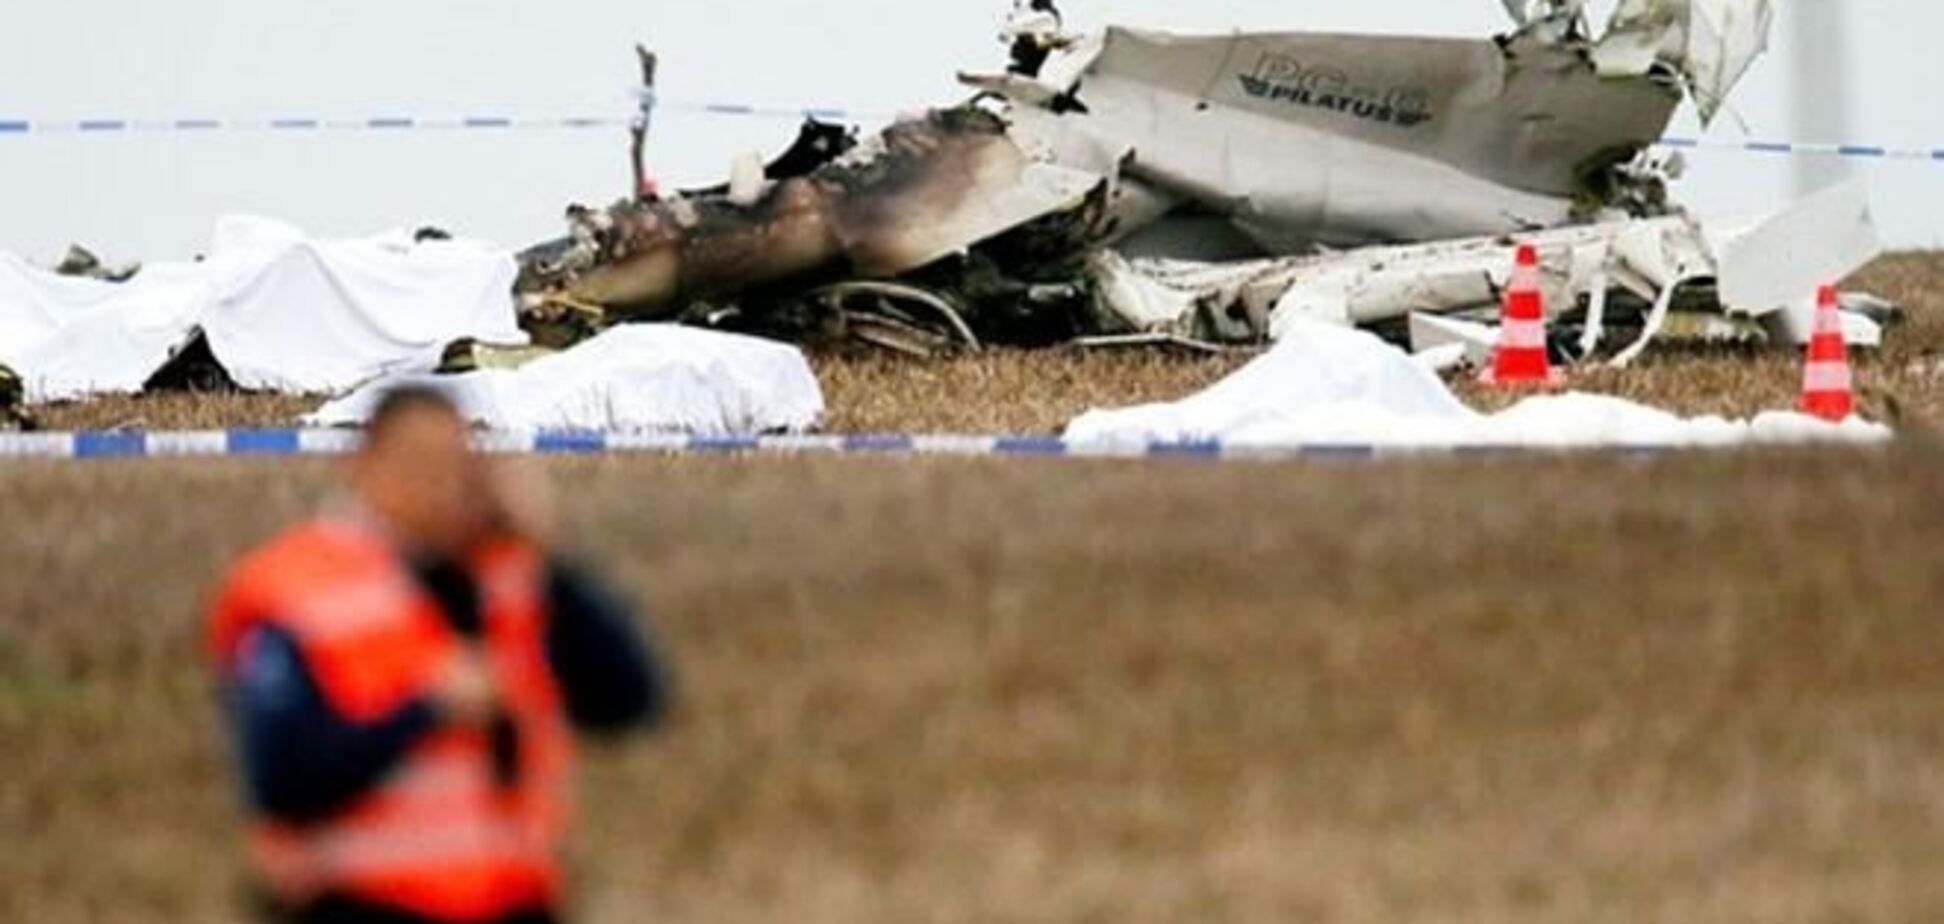 Подробиці авіакатастрофи в Бельгії: літак вже падав 13 років тому